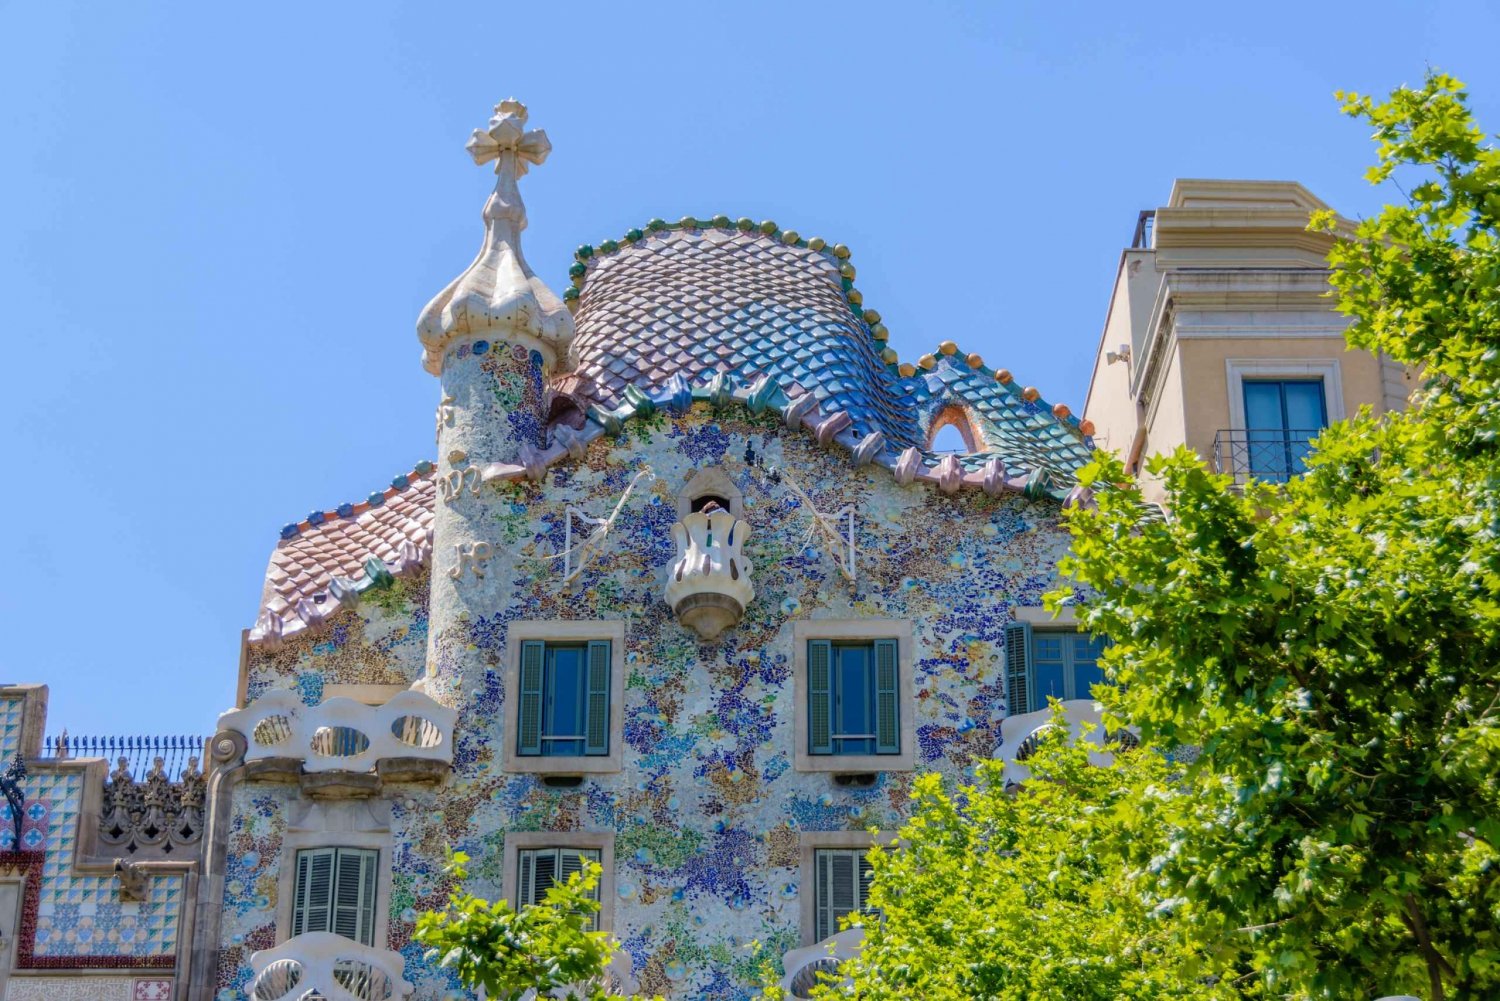 Barcelona and Antoni Gaudí's Work Bus Tour